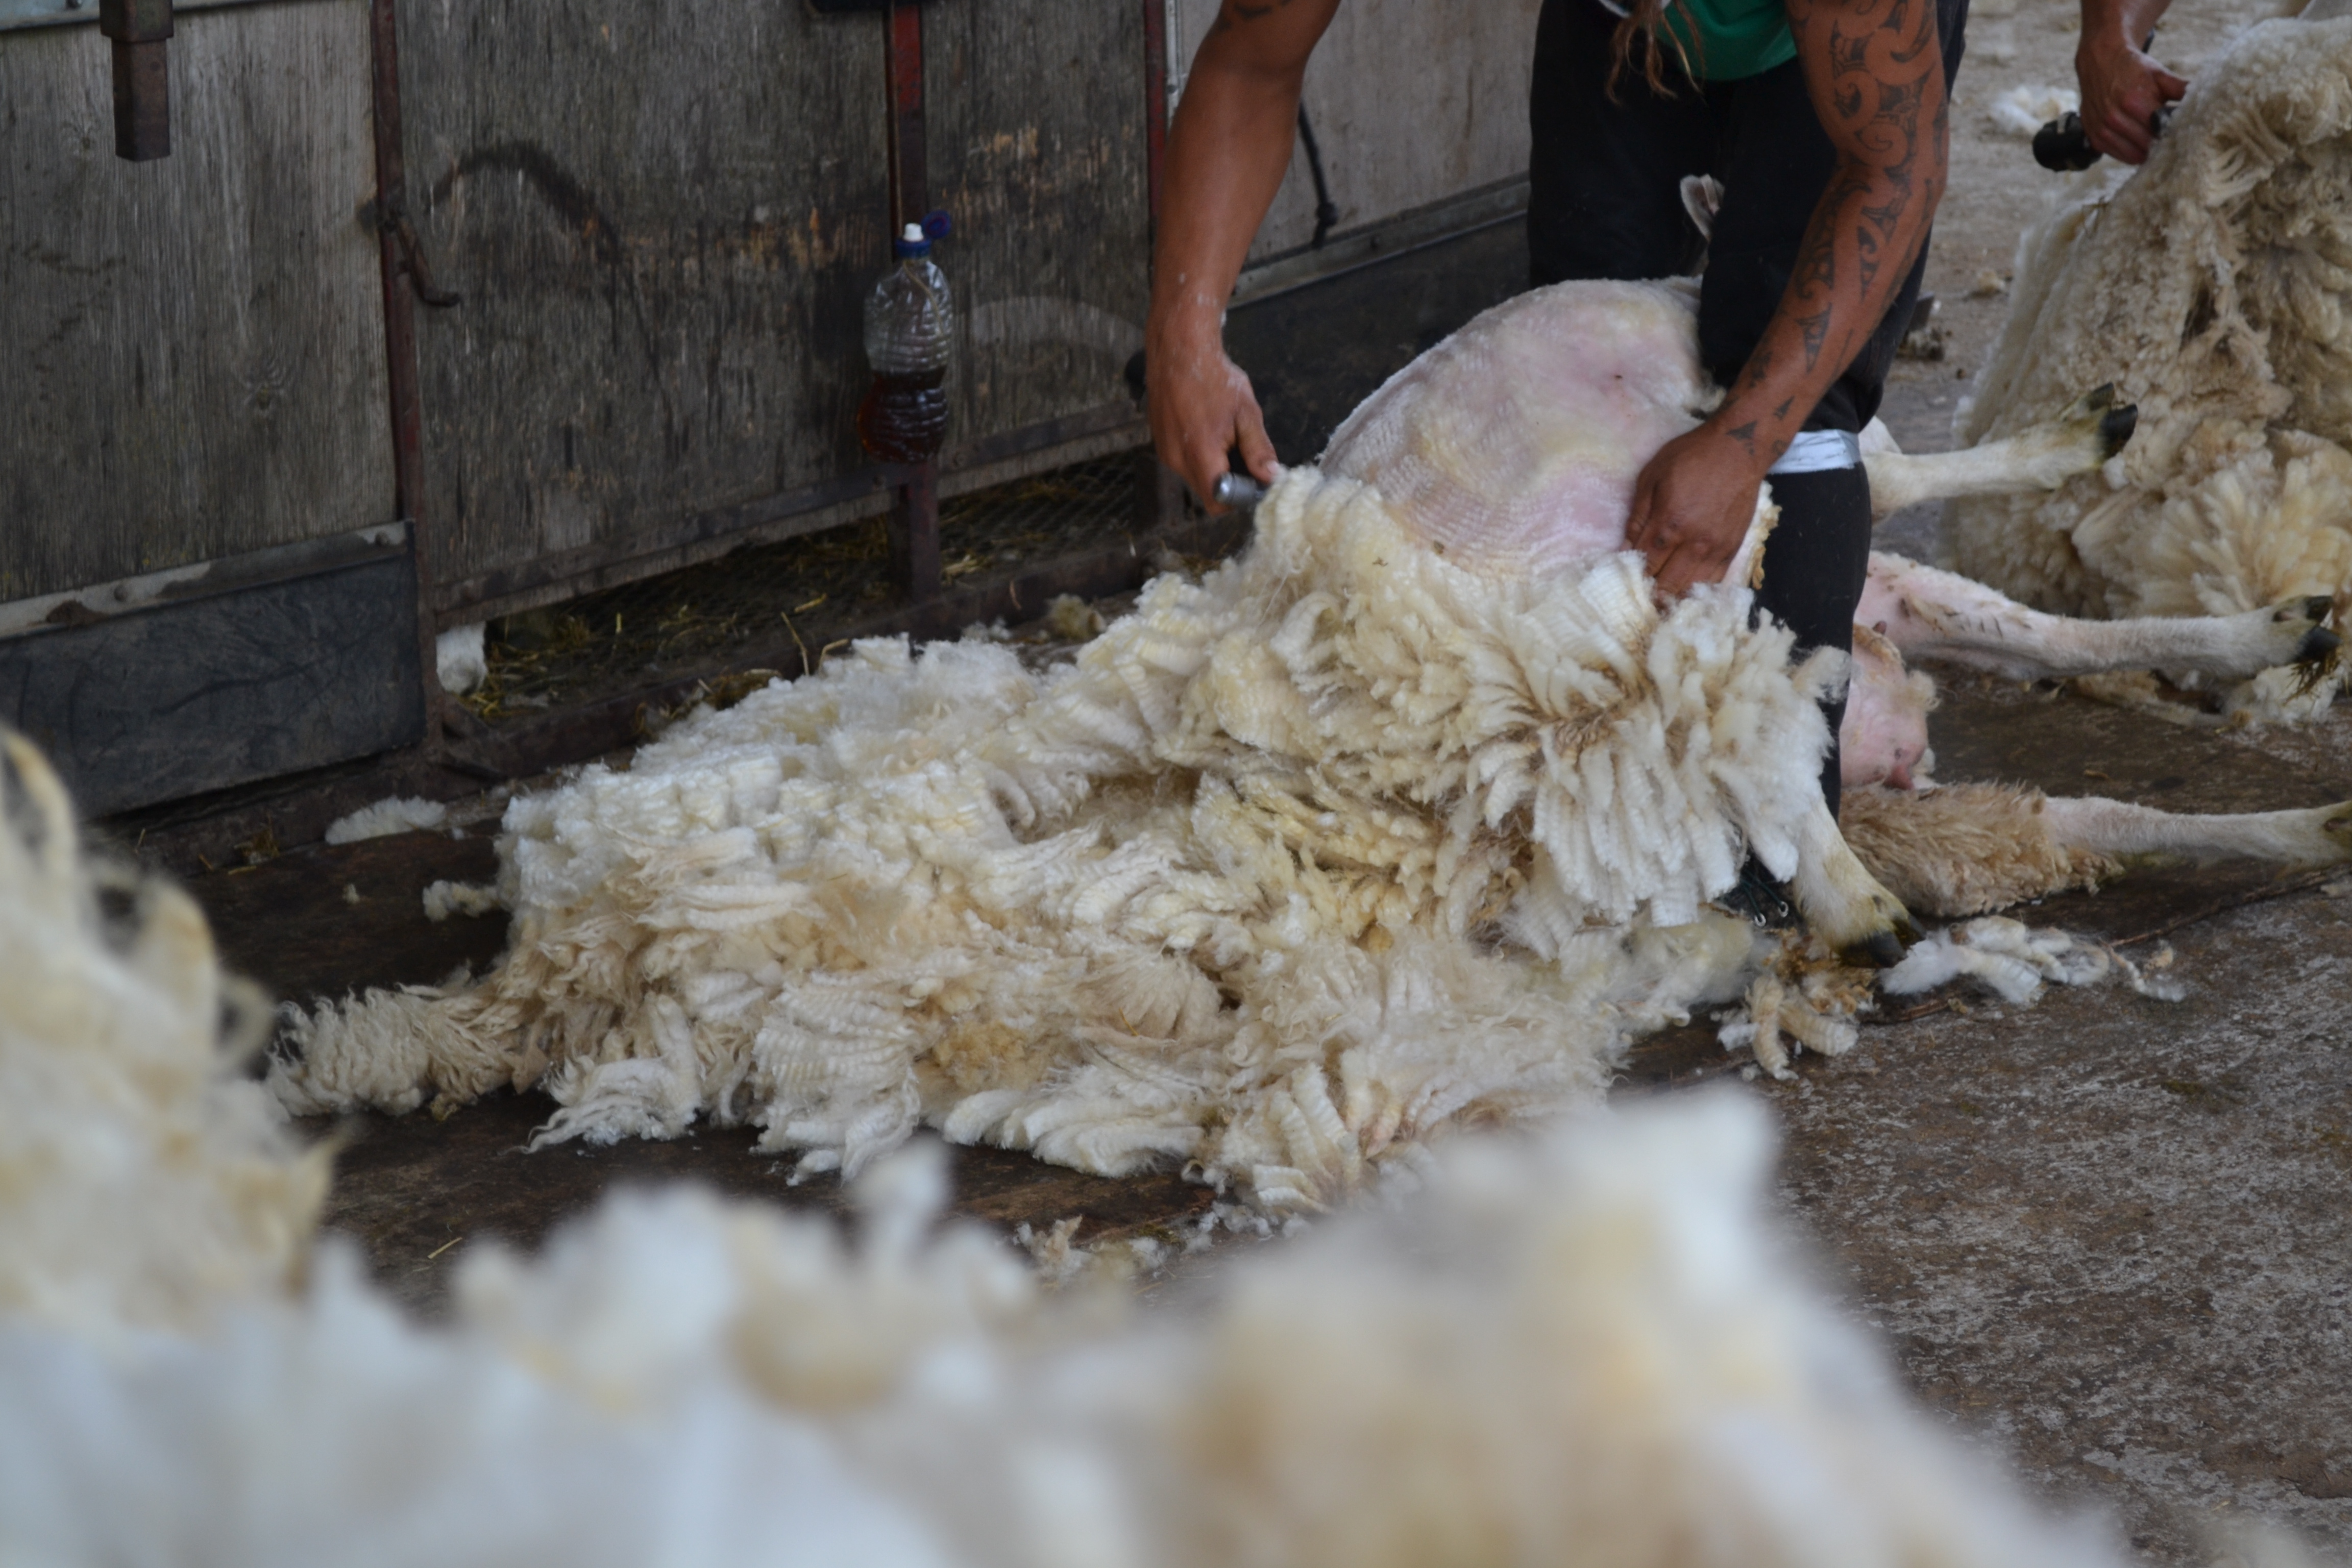 At the shearing